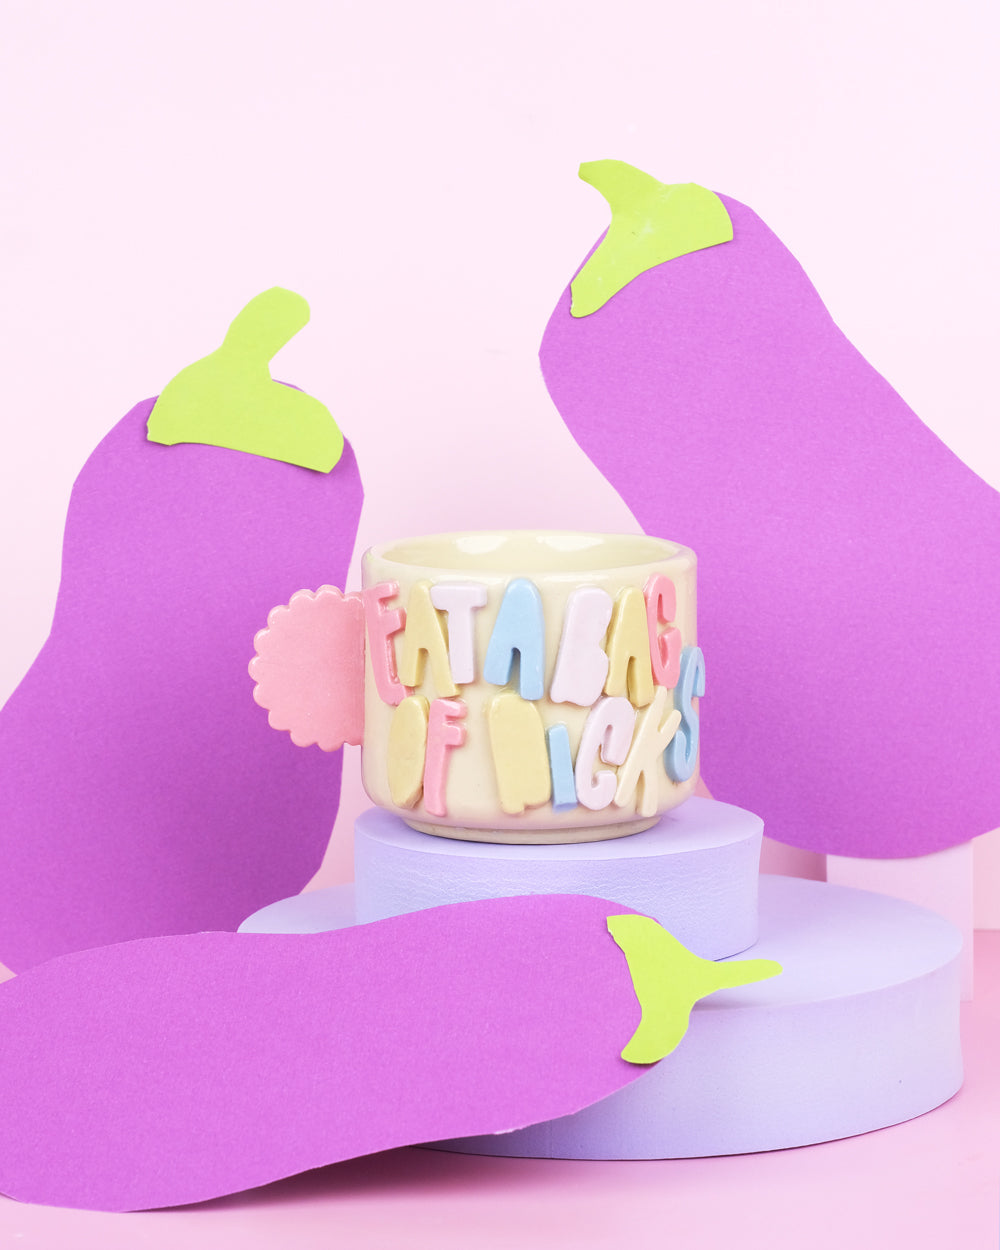 Eat a bag of dicks - Teacup mug